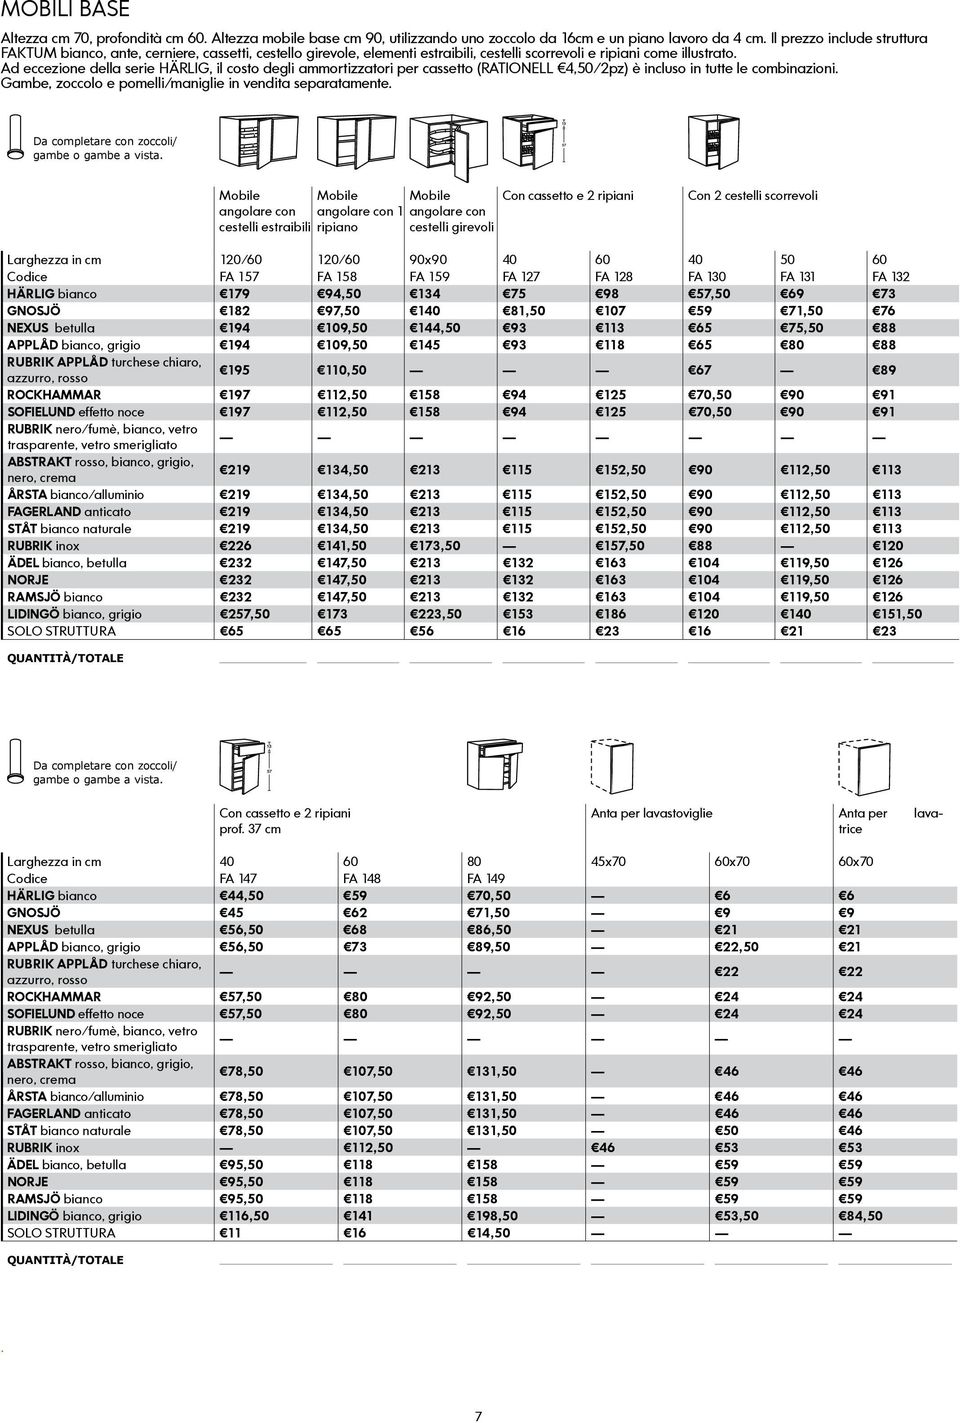 Ad eccezione della serie HÄRLIG, il costo degli ammortizzatori per cassetto (RATIONELL 4,50/2pz) è incluso in tutte le combinazioni. Gambe, zoccolo e pomelli/maniglie in vendita separatamente.